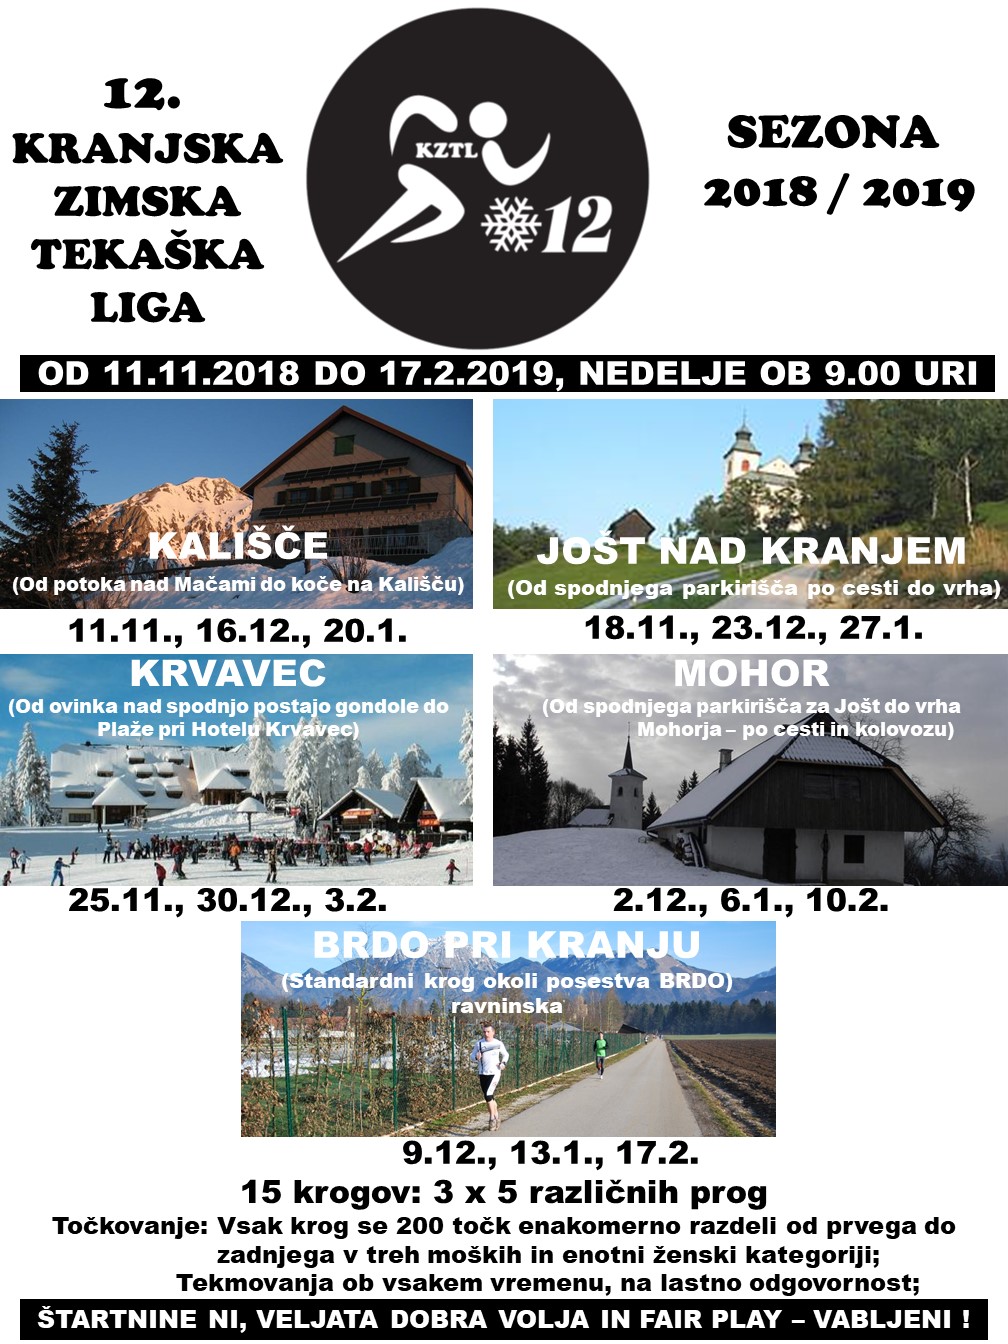 KRANJSKA ZIMSKA TEKAŠKA LIGA 2018-2019.jpg